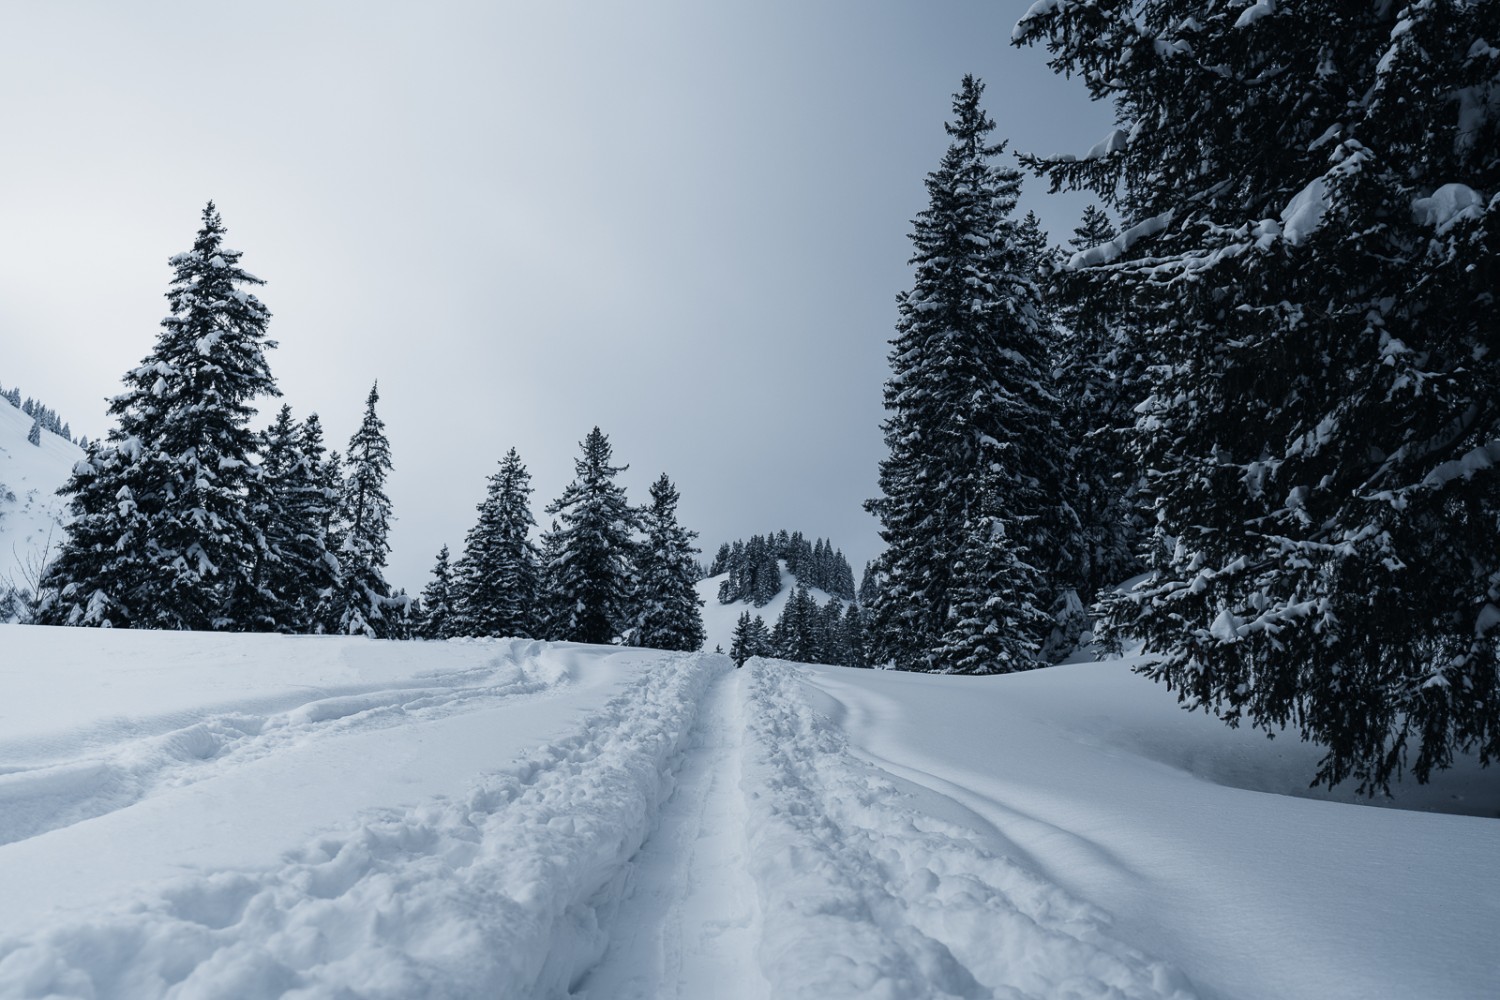 Sentier hivernal de raquettes à neige à côté des traces de slalom des skieurs de randonnée. Photo: Jon Guler